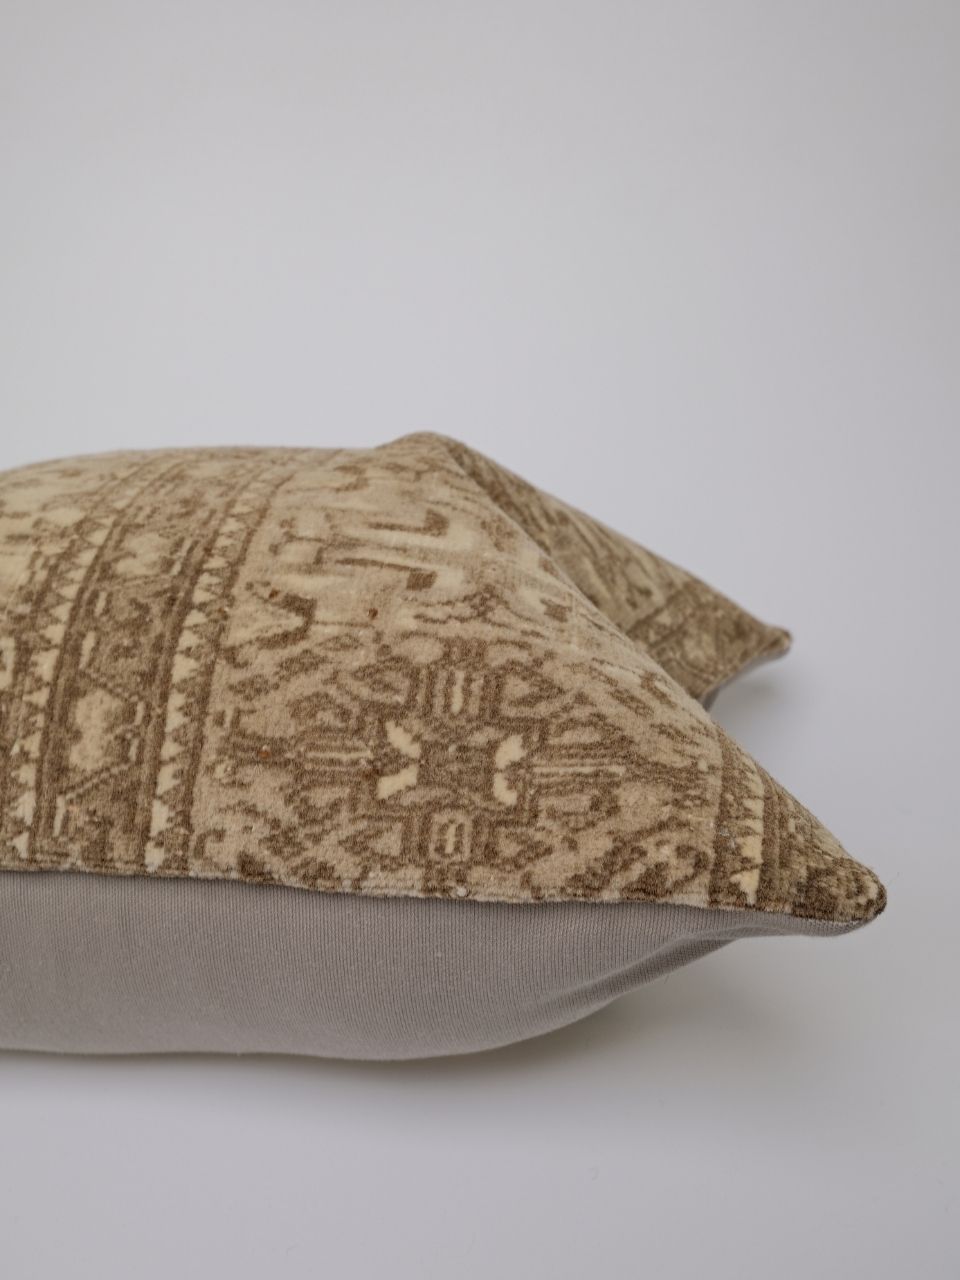 Seda Turkish Vintage Rug Pillow